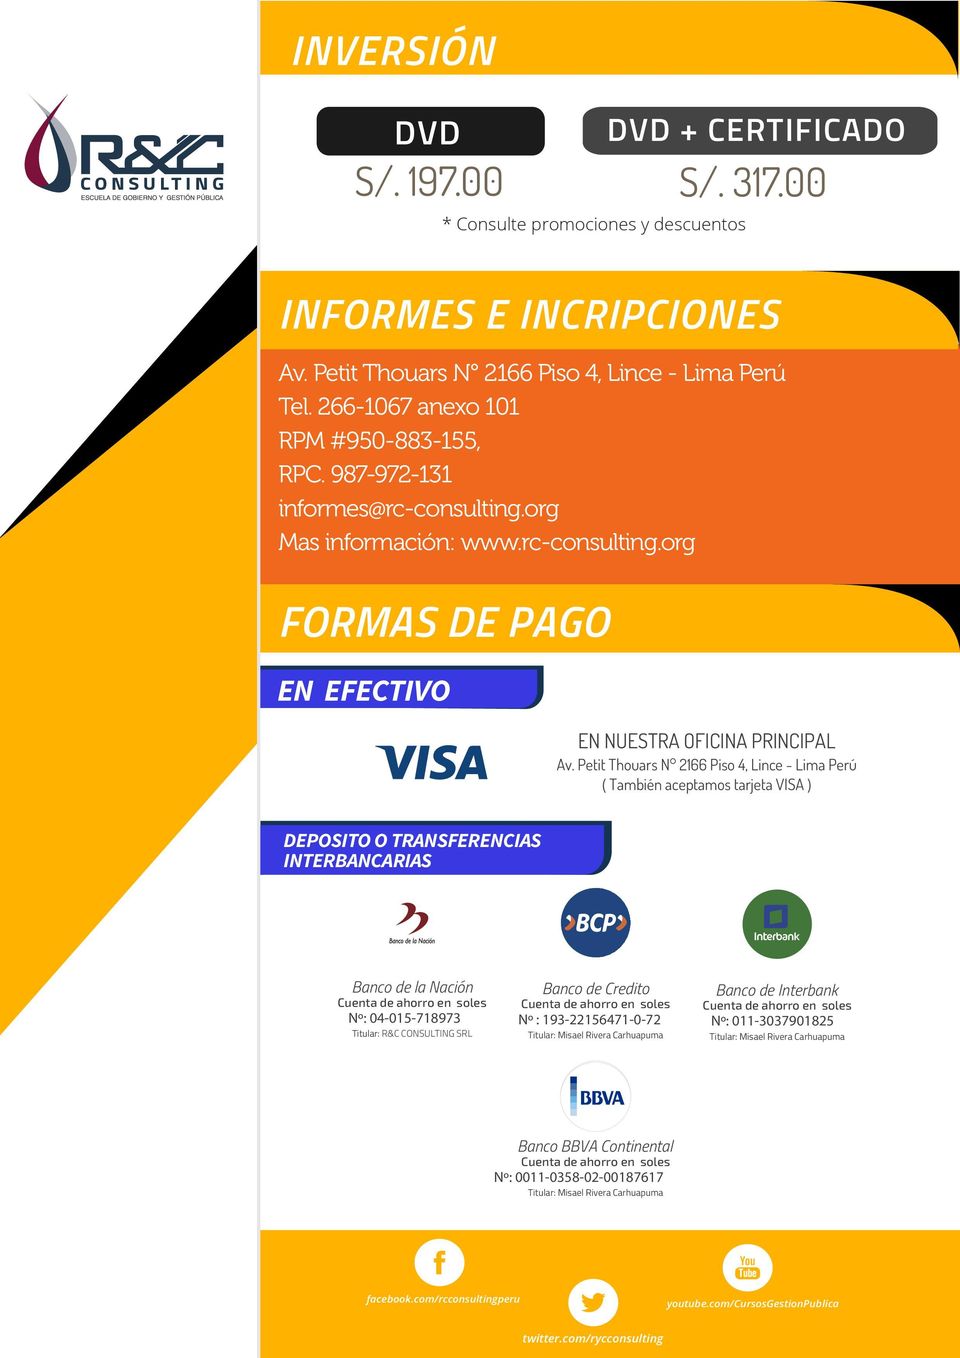 Petit Thouars N 2166 Piso 4, Lince - Lima Perú ( También aceptamos tarjeta VISA ) DEPOSITO O TRANSFERENCIAS INTERBANCARIAS Banco de la Nación Nº: 04-015-718973 Titular: R&C CONSULTING SRL Banco de